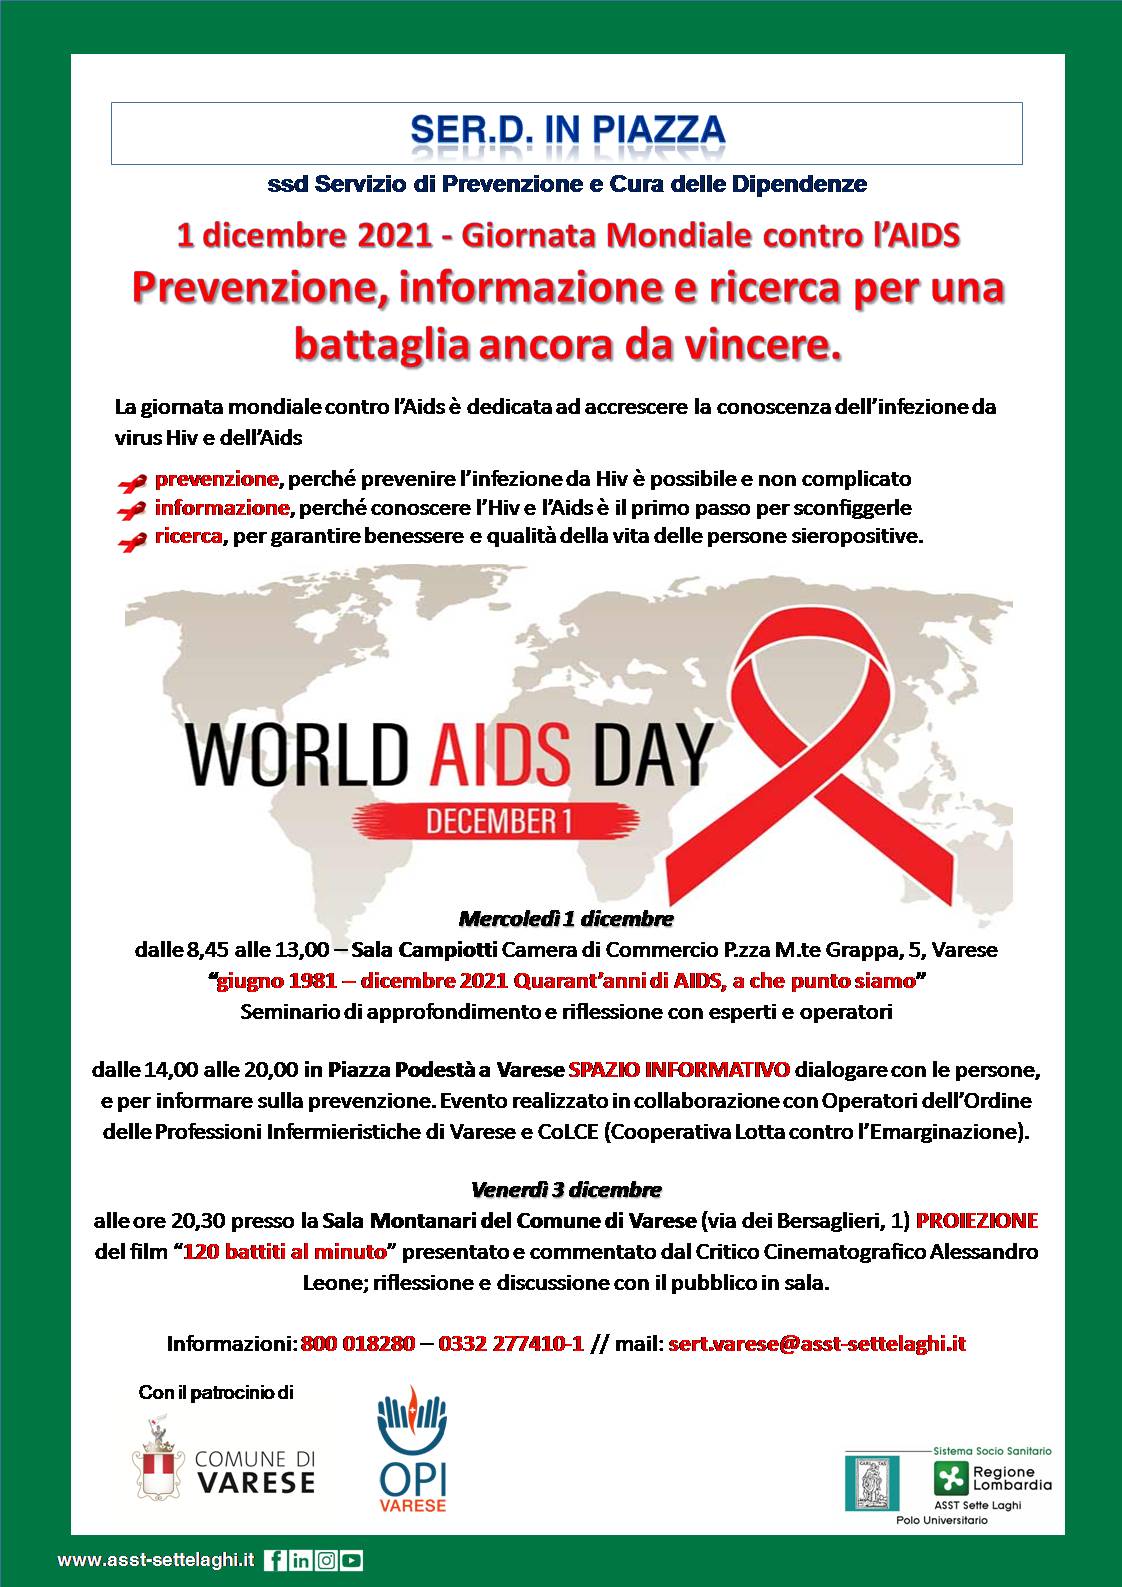 1° dicembre 2021 - Giornata Mondiale contro l’AIDS. Le iniziative del Ser.D di ASST Sette Laghi